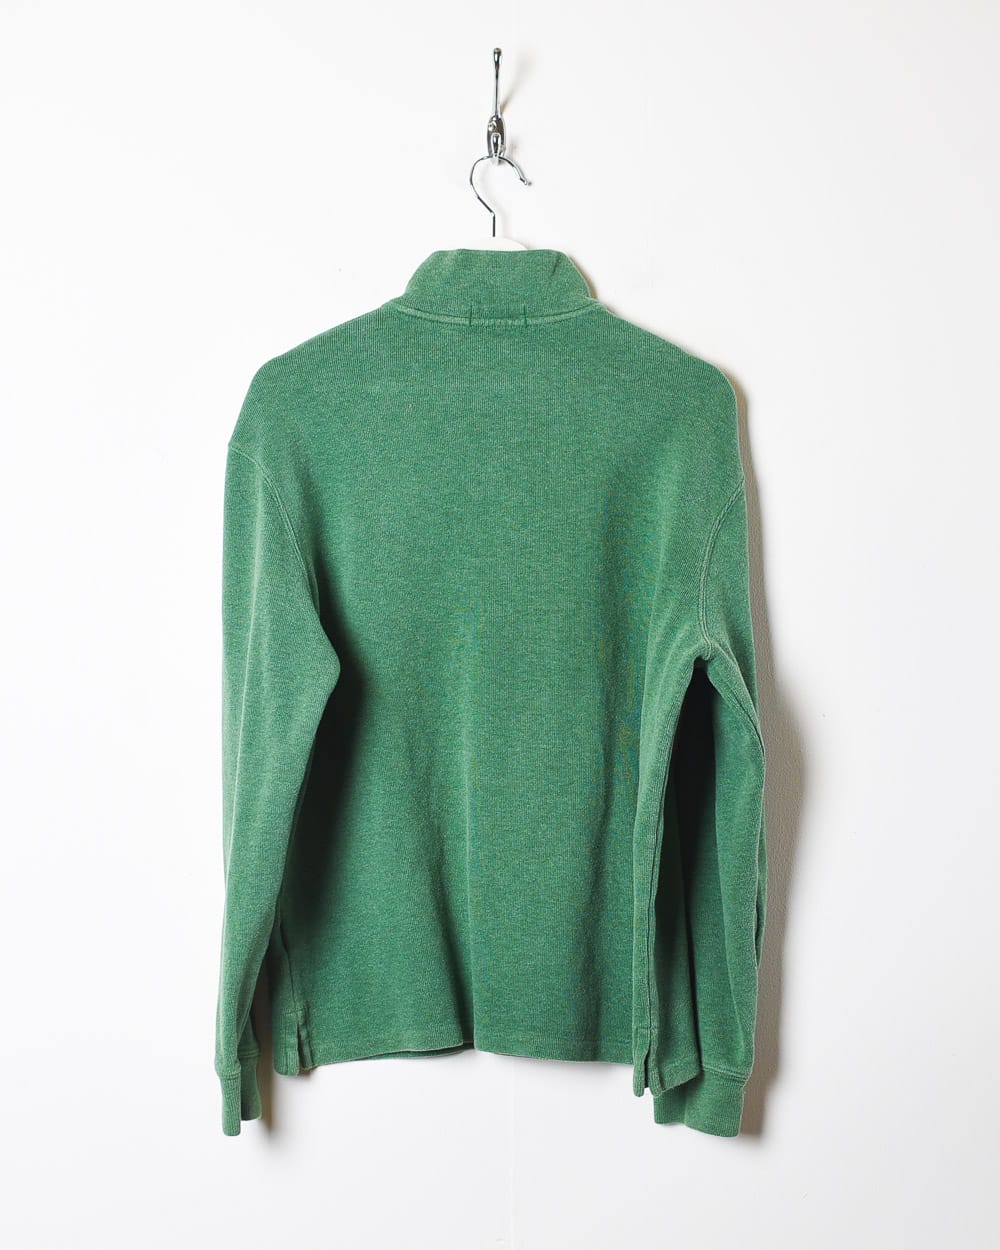 Green Polo Ralph Lauren 1/4 Zip Sweatshirt - Small